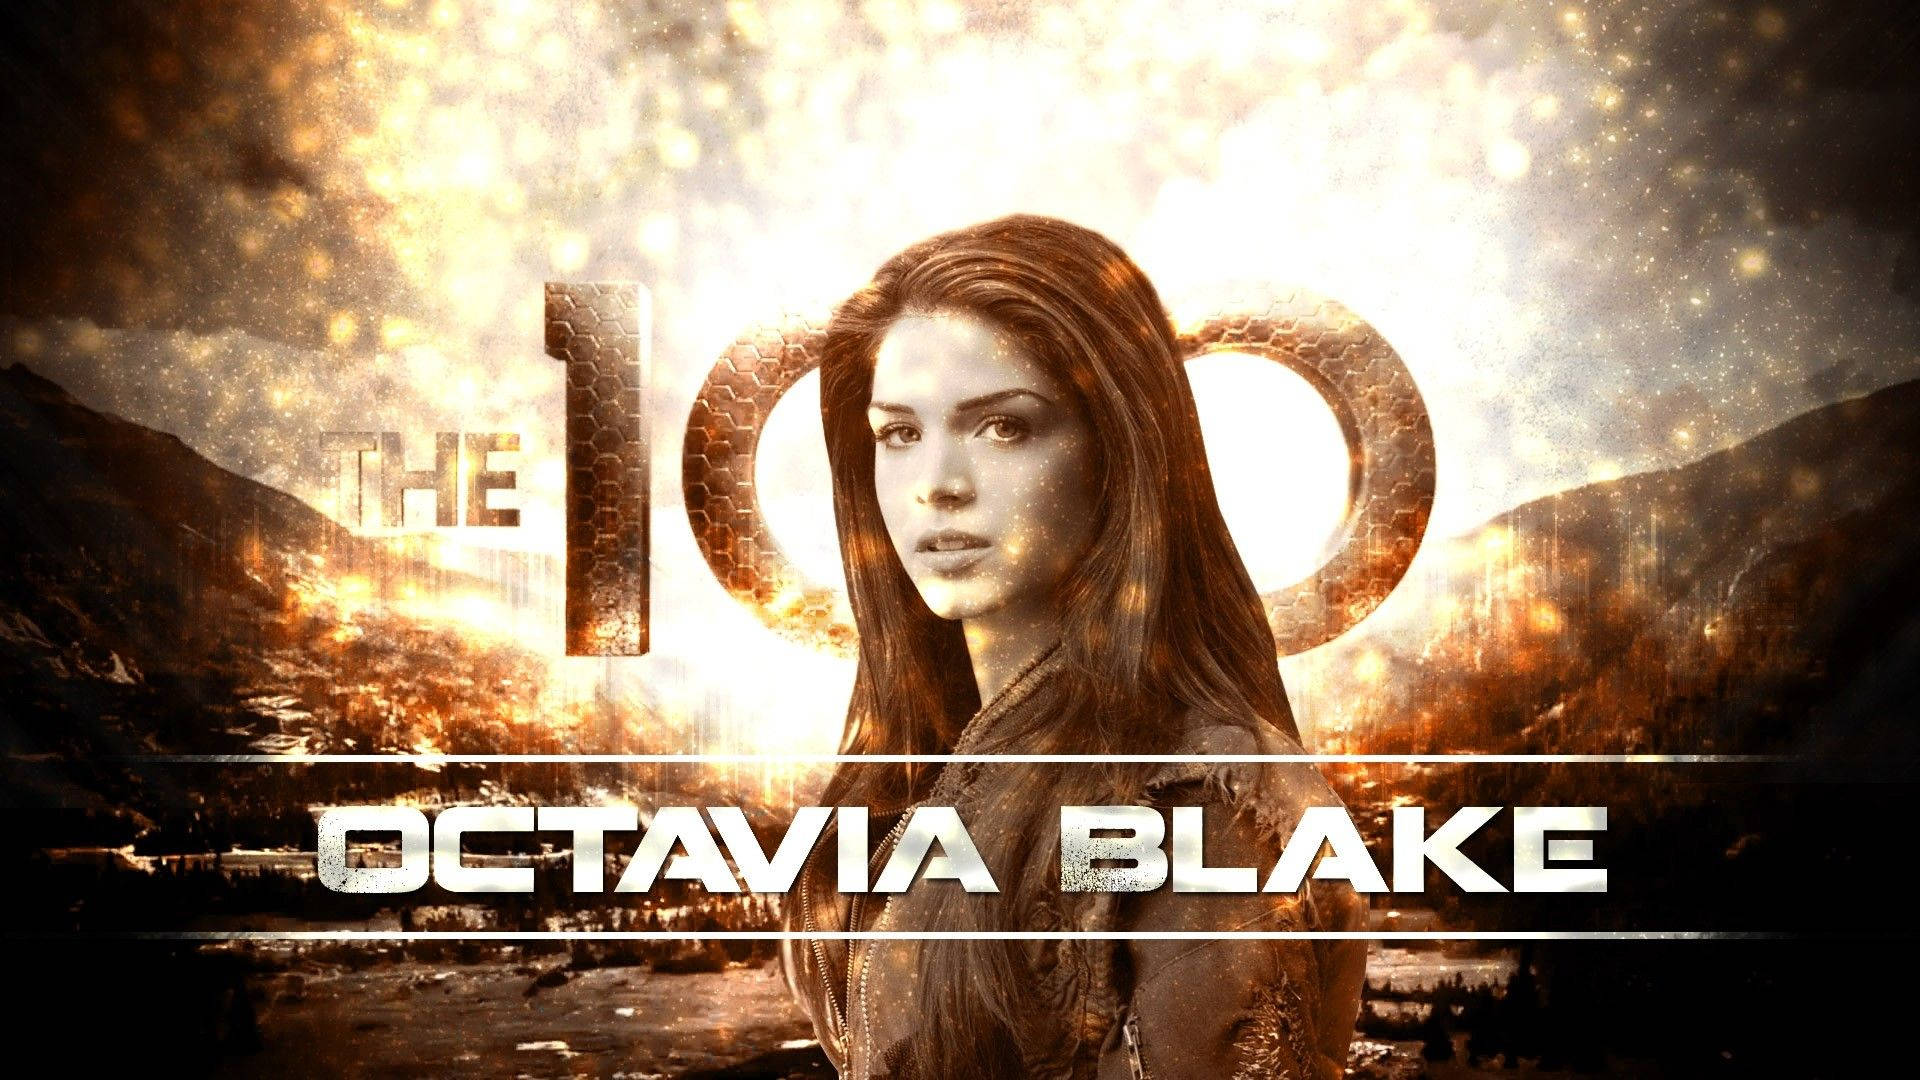 Die100 Charakter Octavia Blake Wallpaper